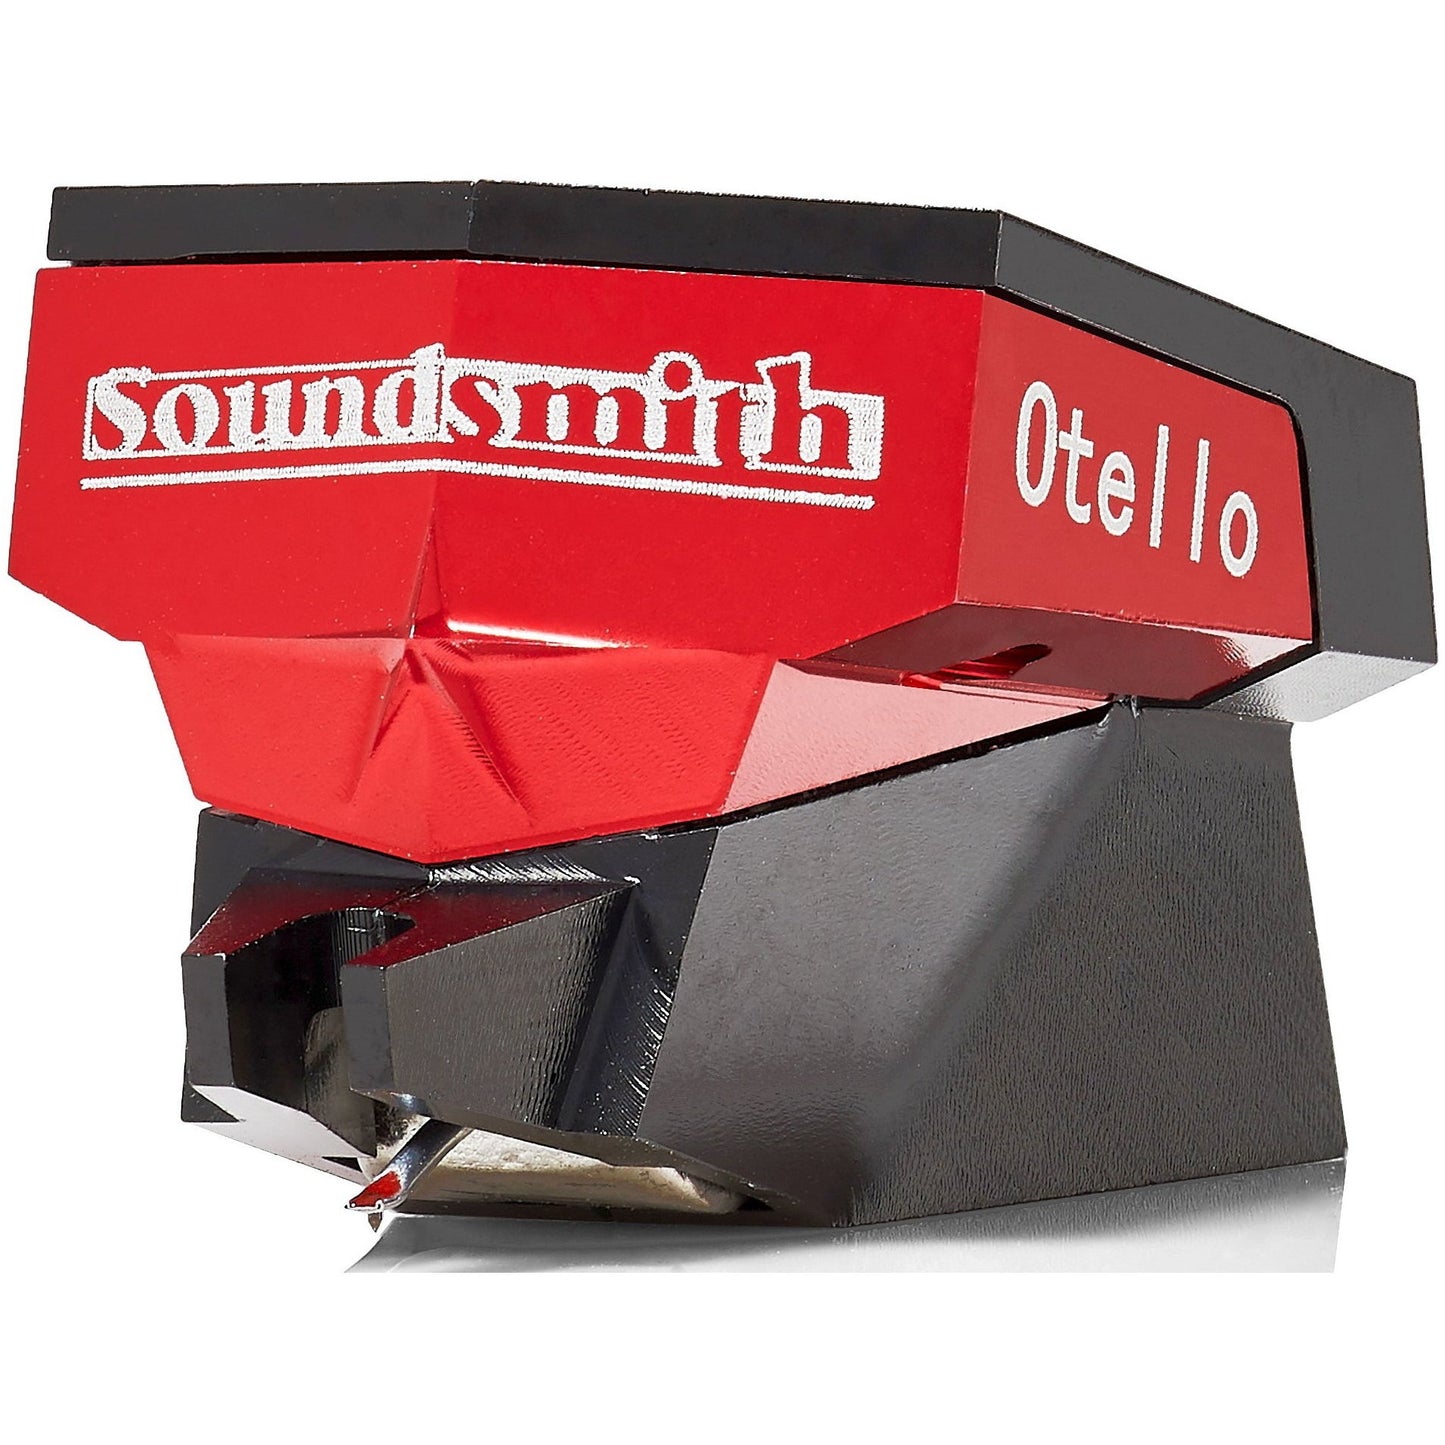 Soundsmith Otello Cartridge